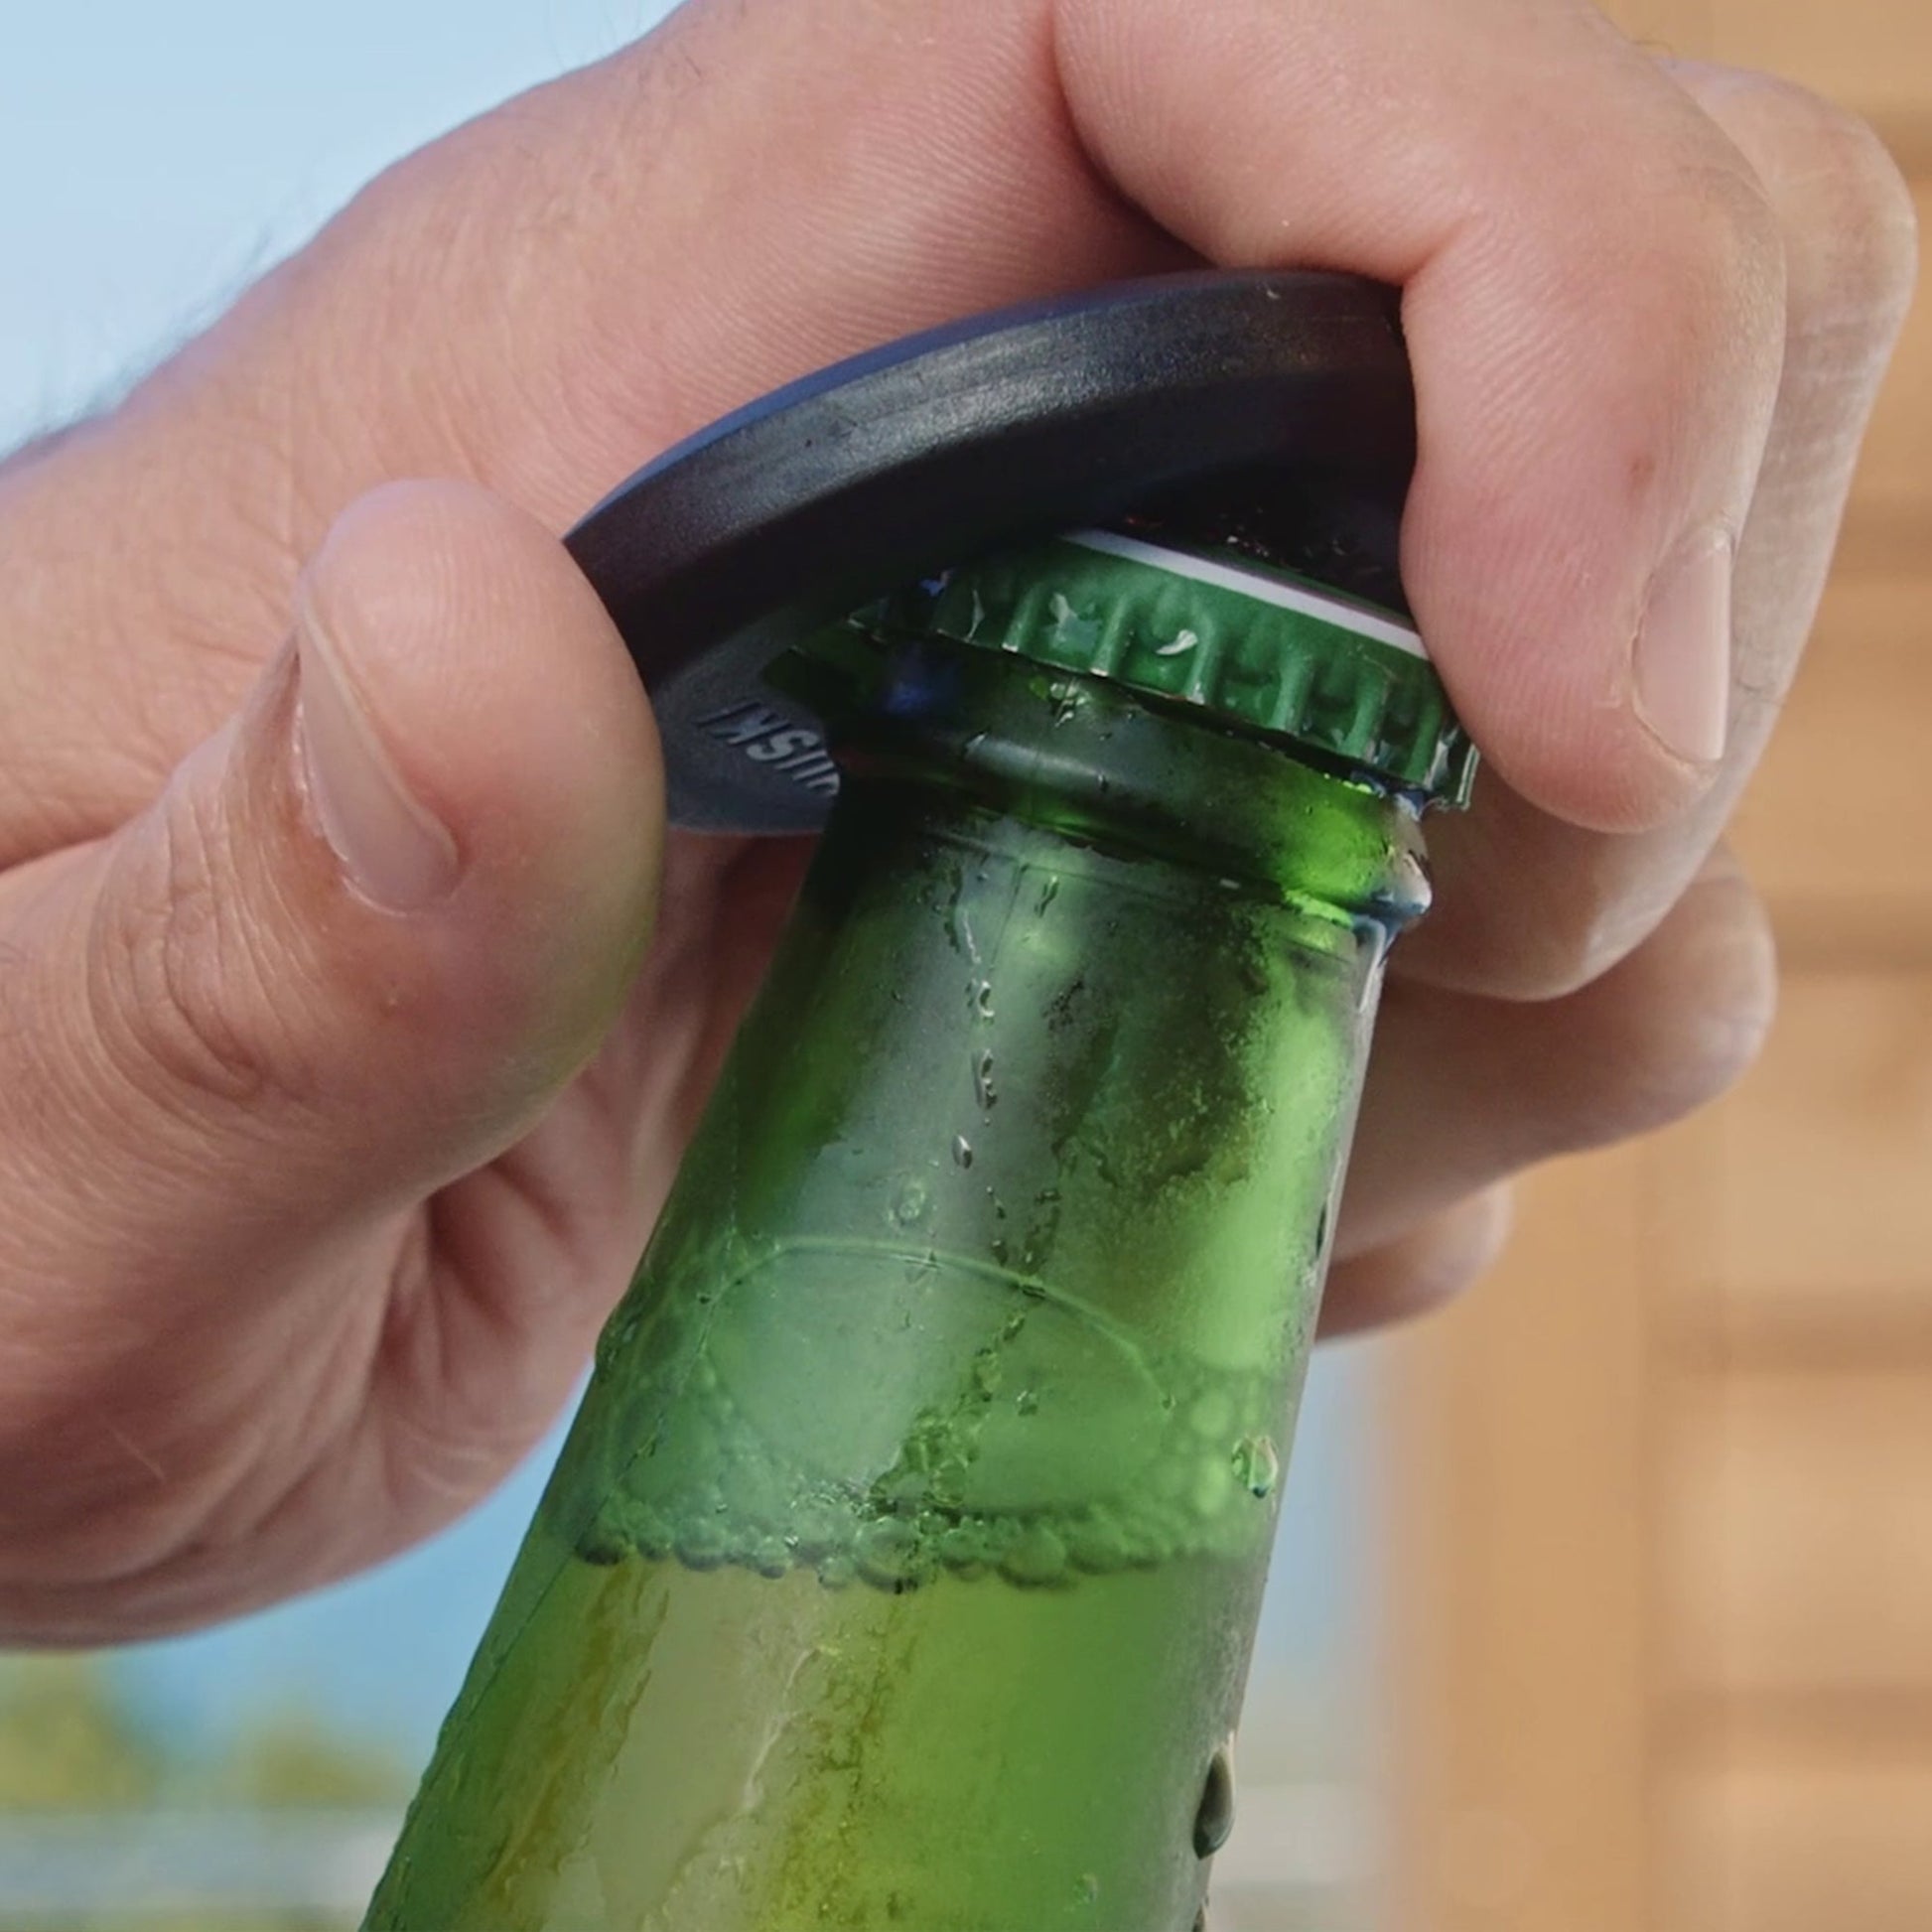 NEW: Huski 3-in-1 Bottle Opener Keyring – Huski™